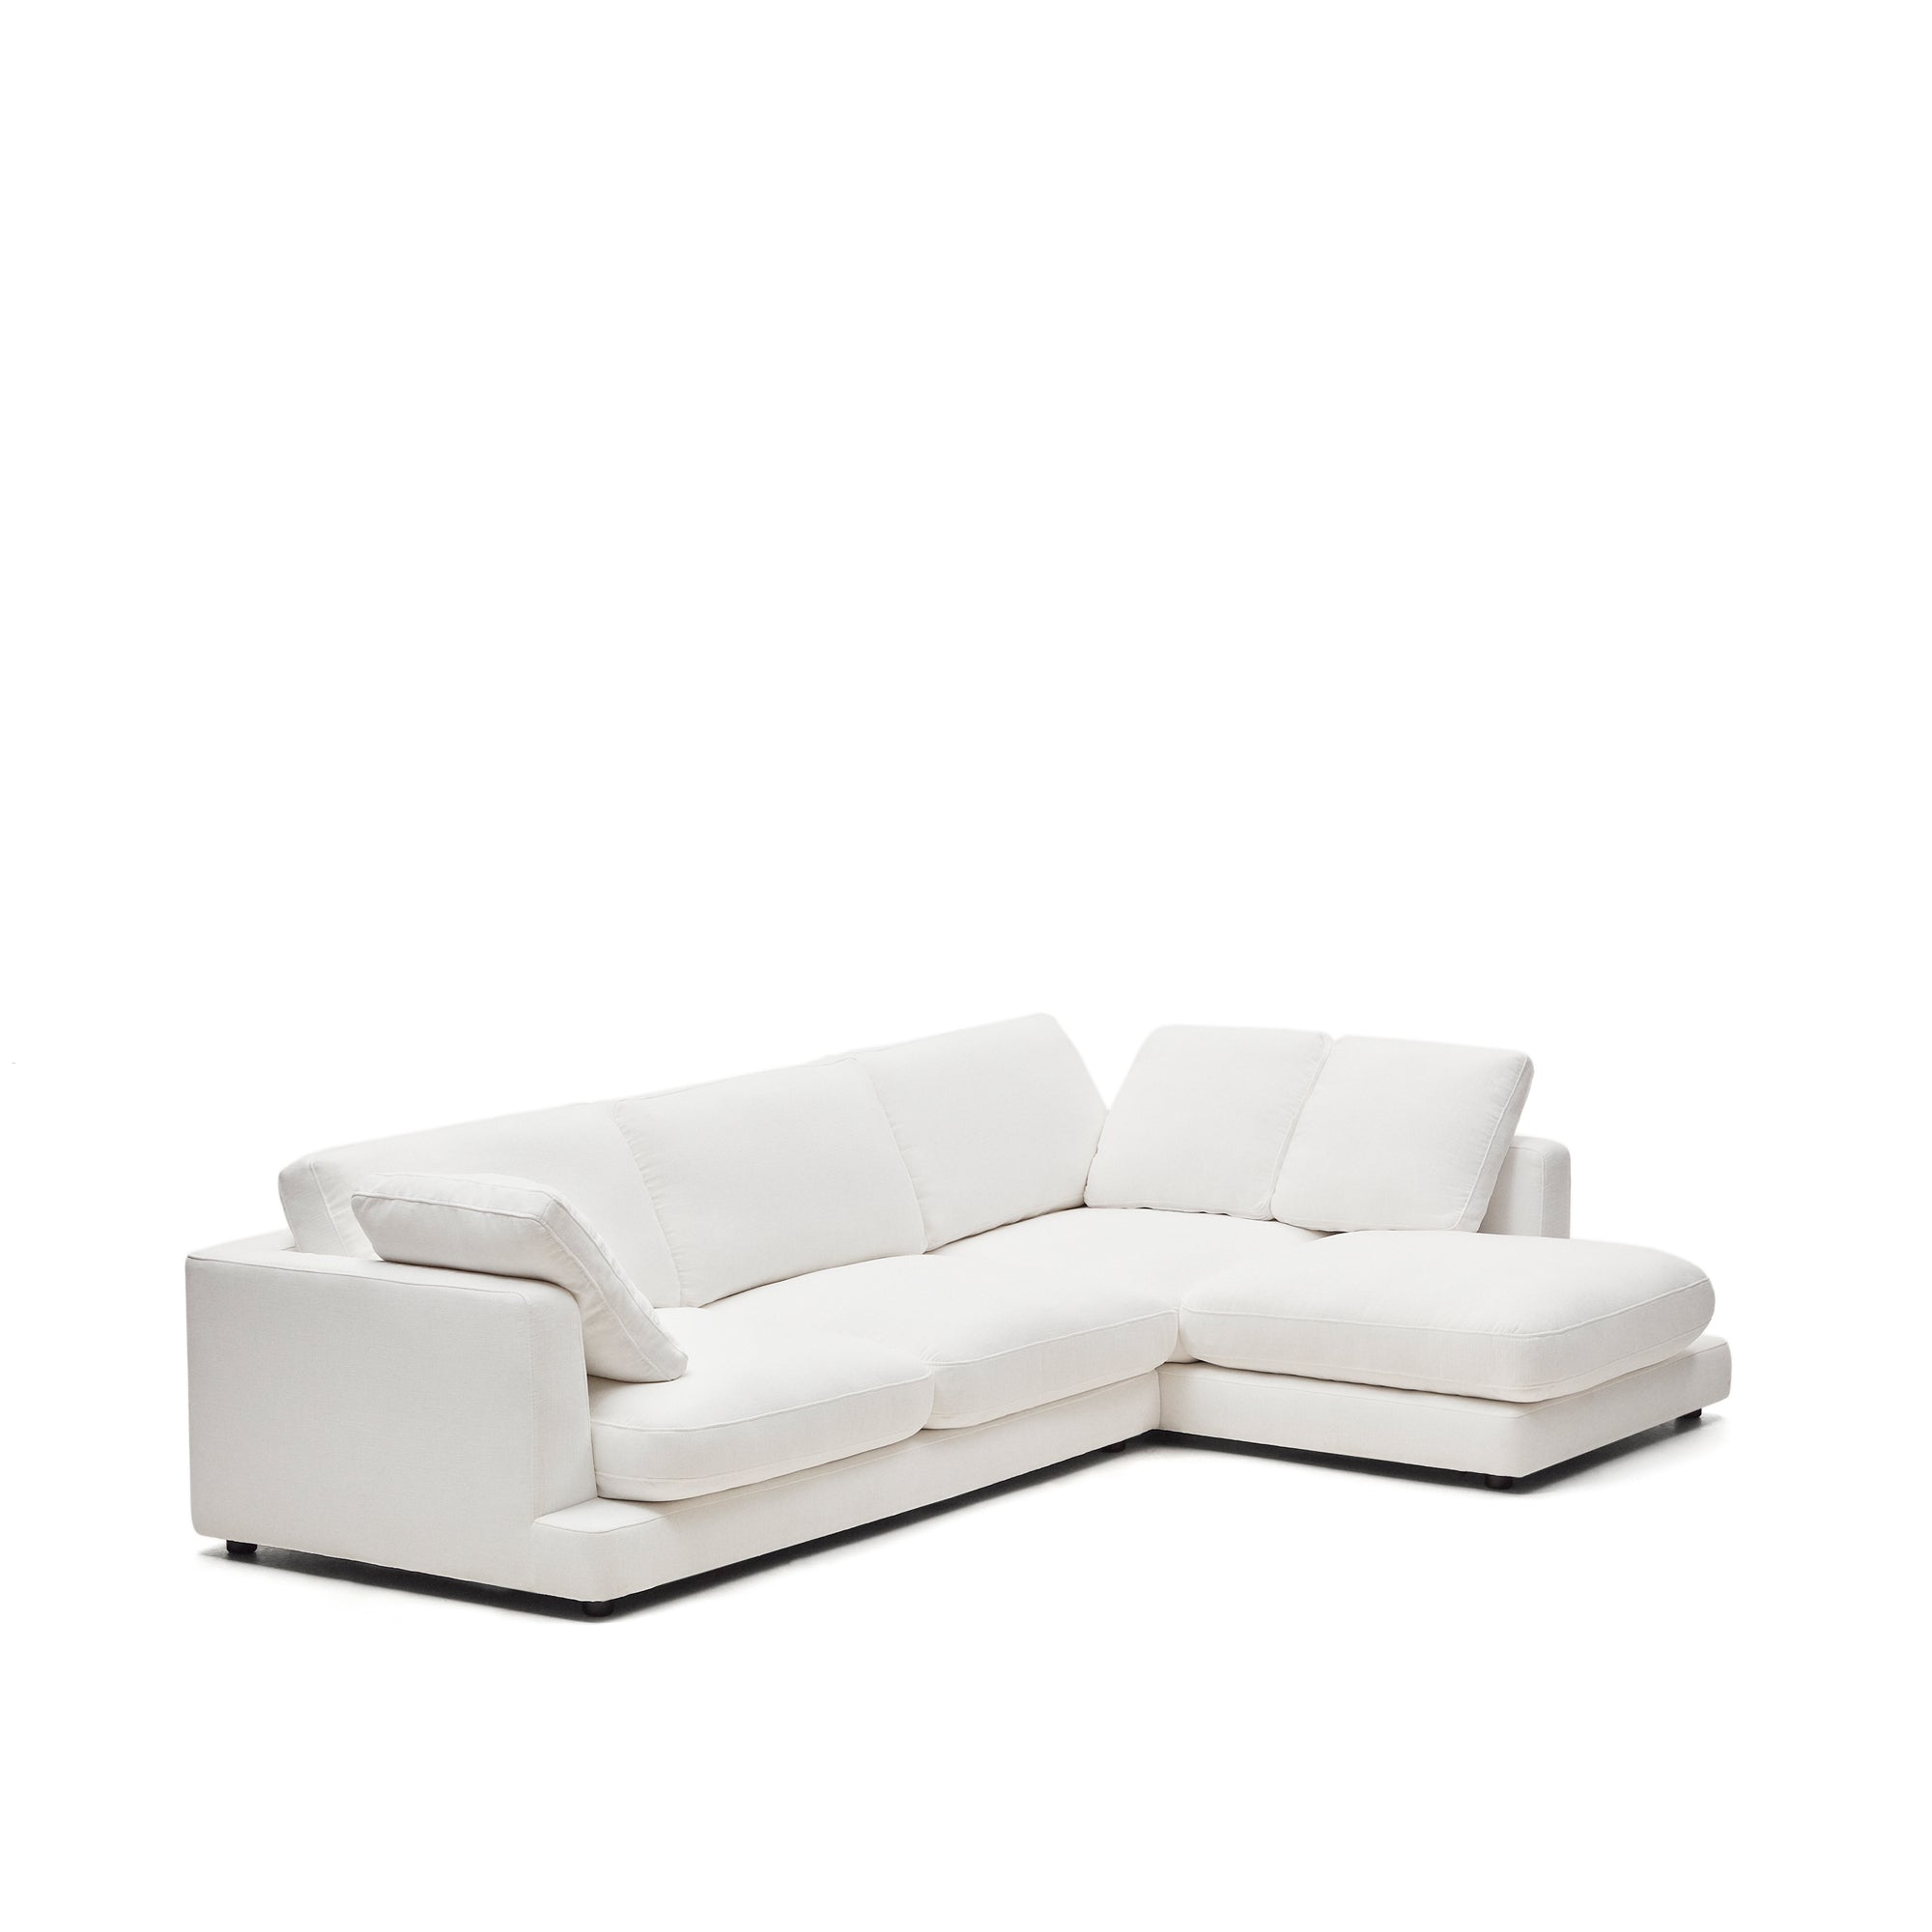 Gala 4 személyes kanapé jobb oldali fekvőfotellel, fehér színben, 300 cm